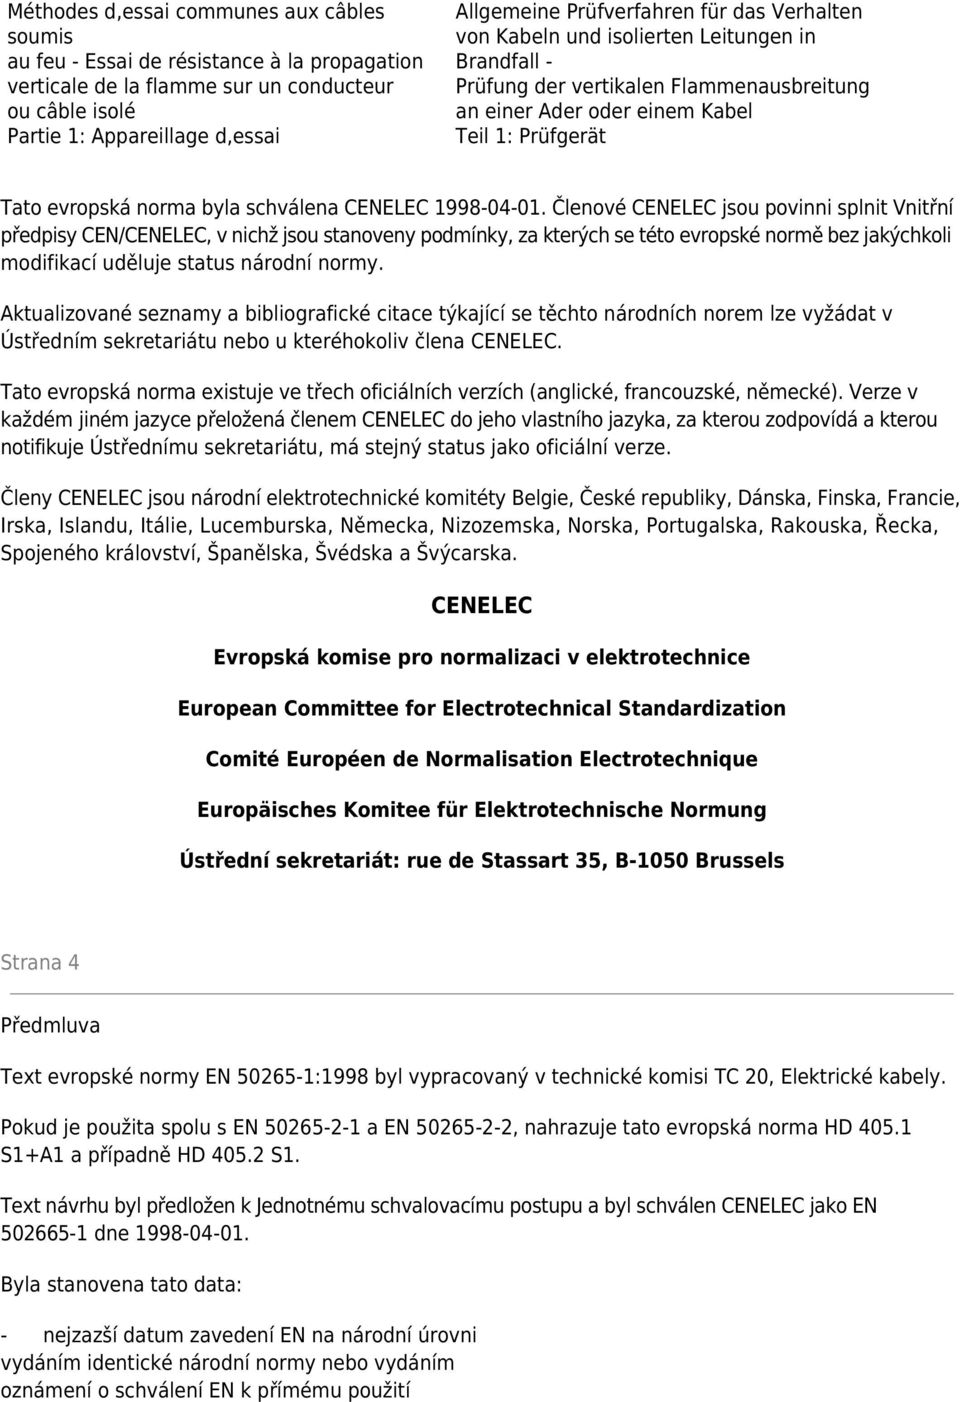 schválena CENELEC 1998-04-01.